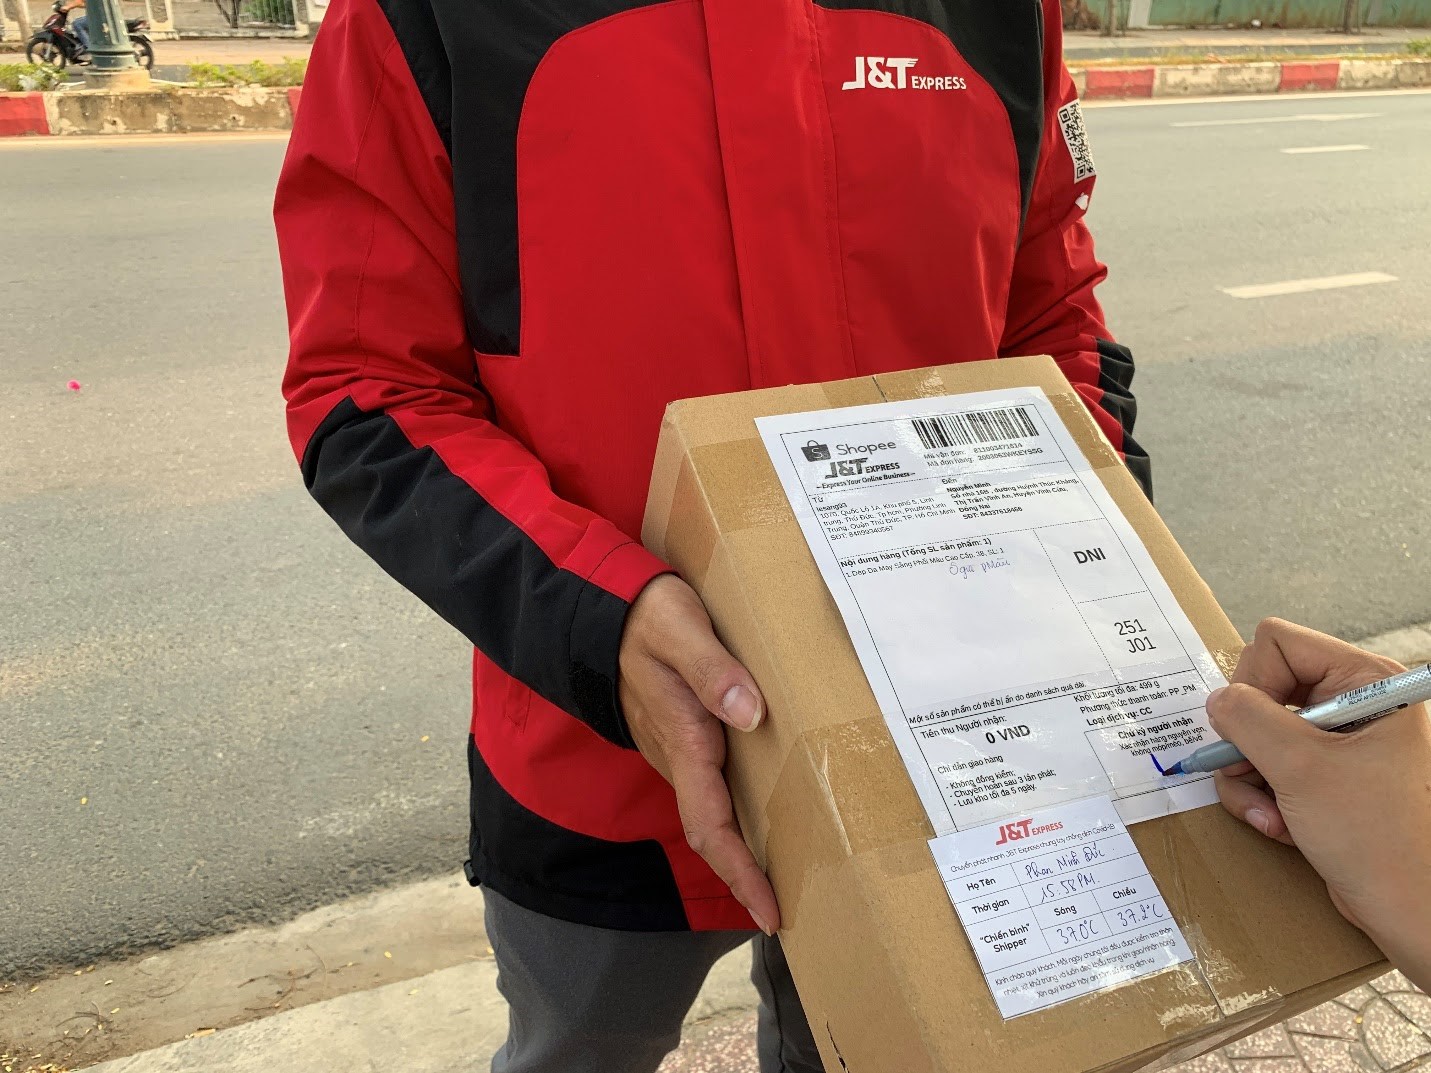 Sáng kiến “Thẻ bưu kiện an tâm” có thông báo thân nhiệt của shipper J&T Express